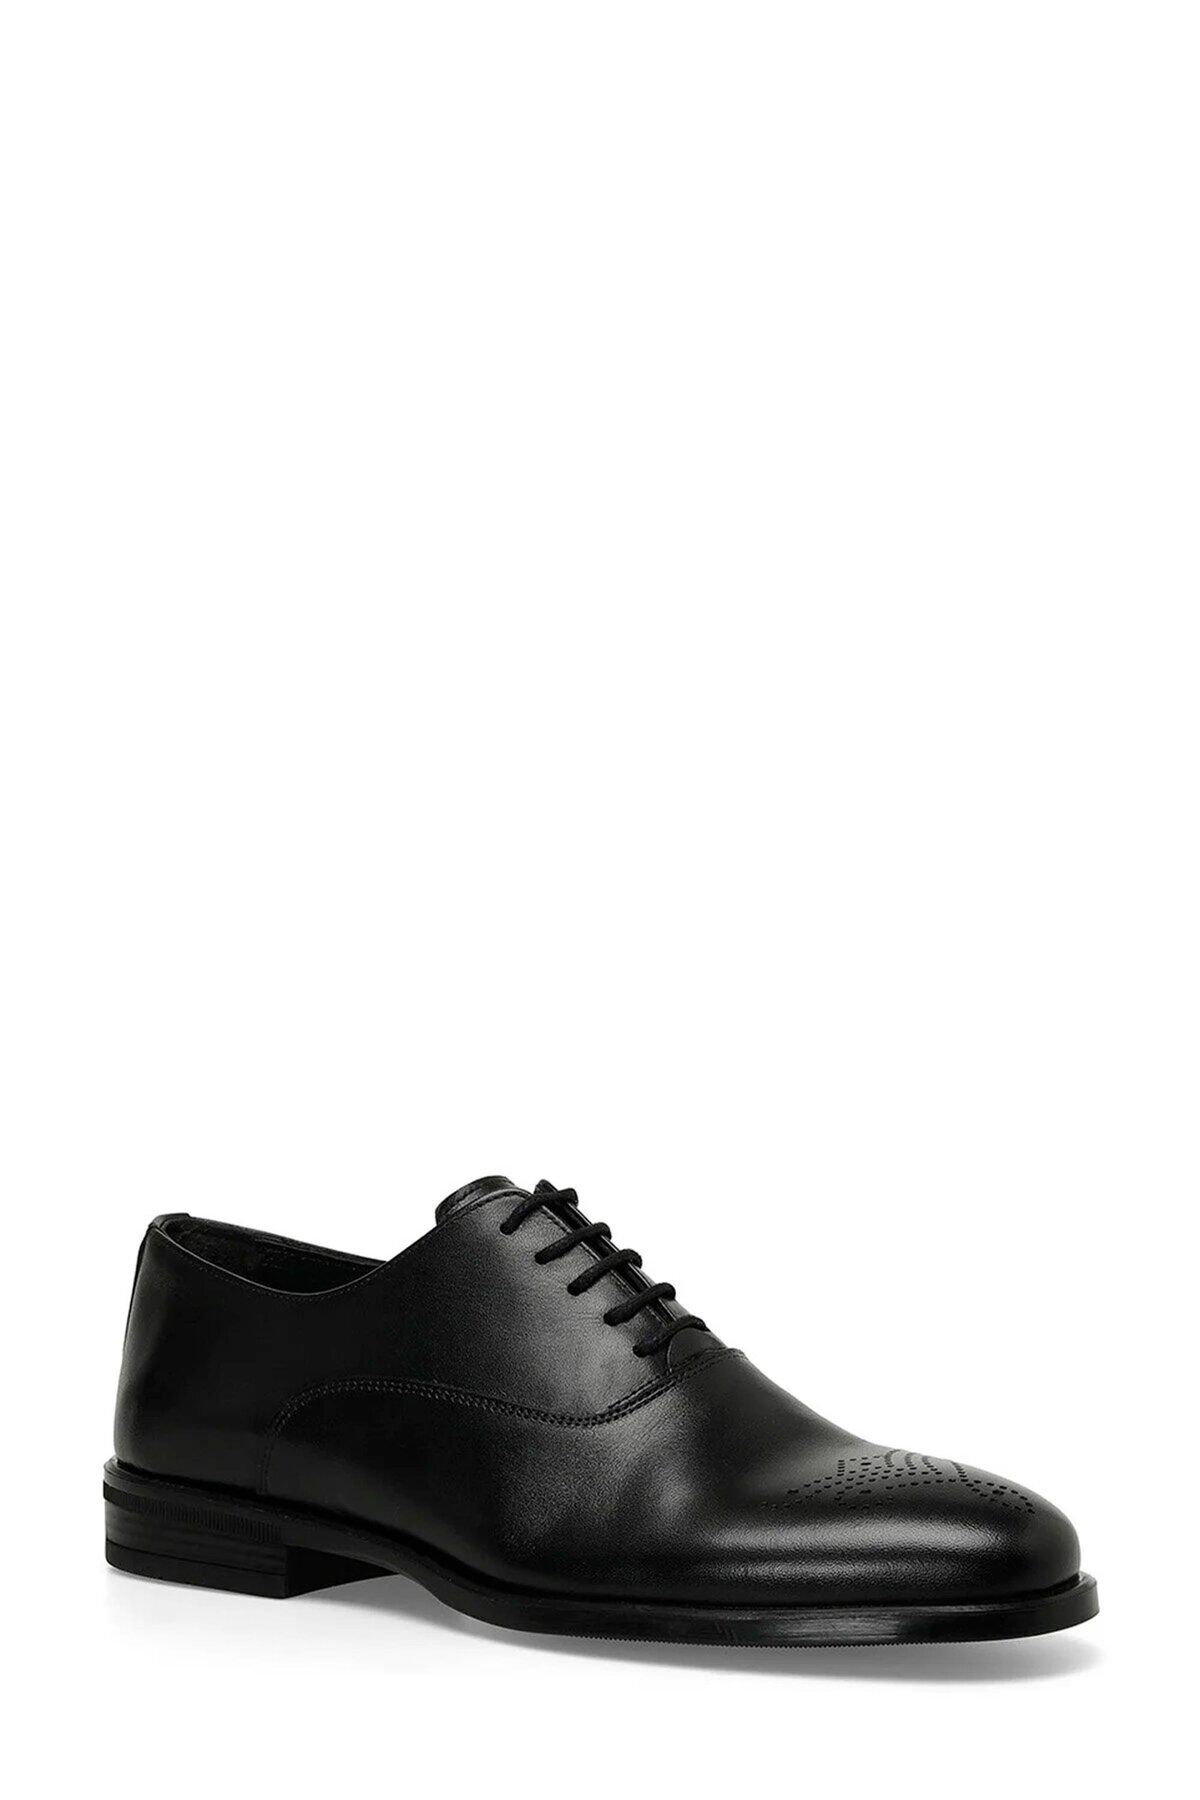 İnci A10156841408010 4p Peony 4fx Siyah Erkek Klasik Ayakkabı